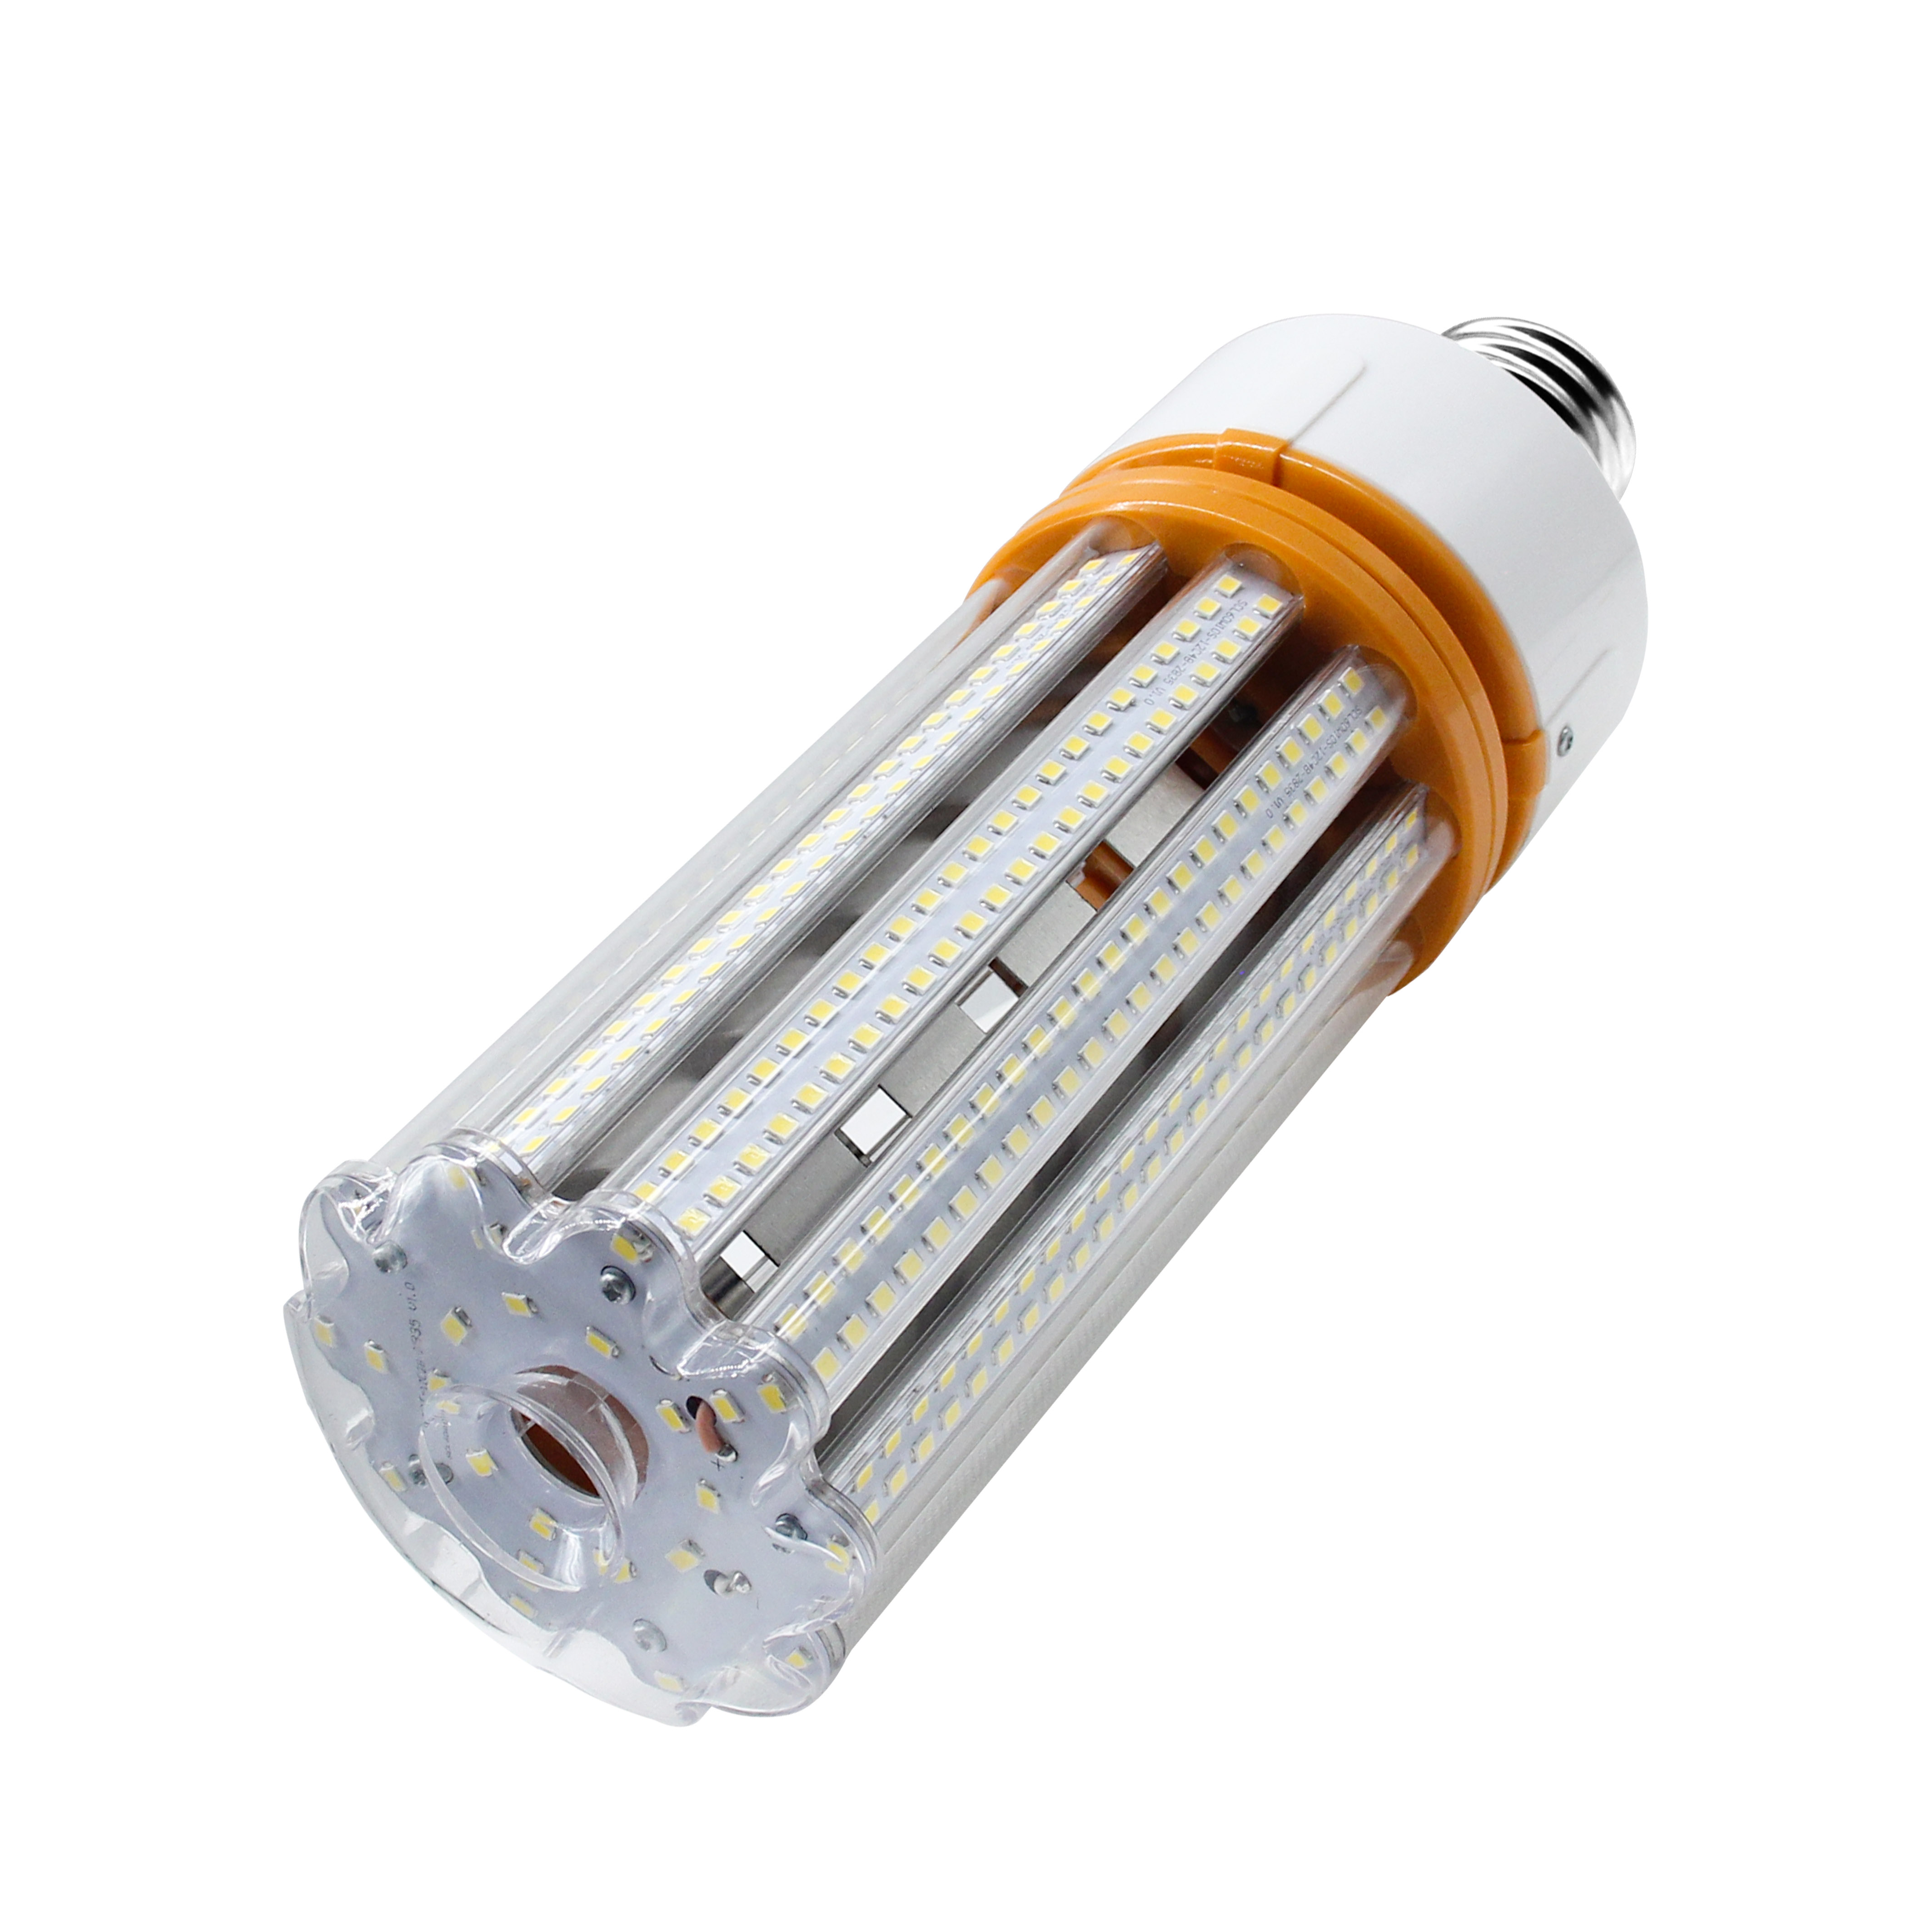 LED Corn Bulb No Fans Led Corn Light led bulb light E26 E39 base 60W with ETL DLC approved